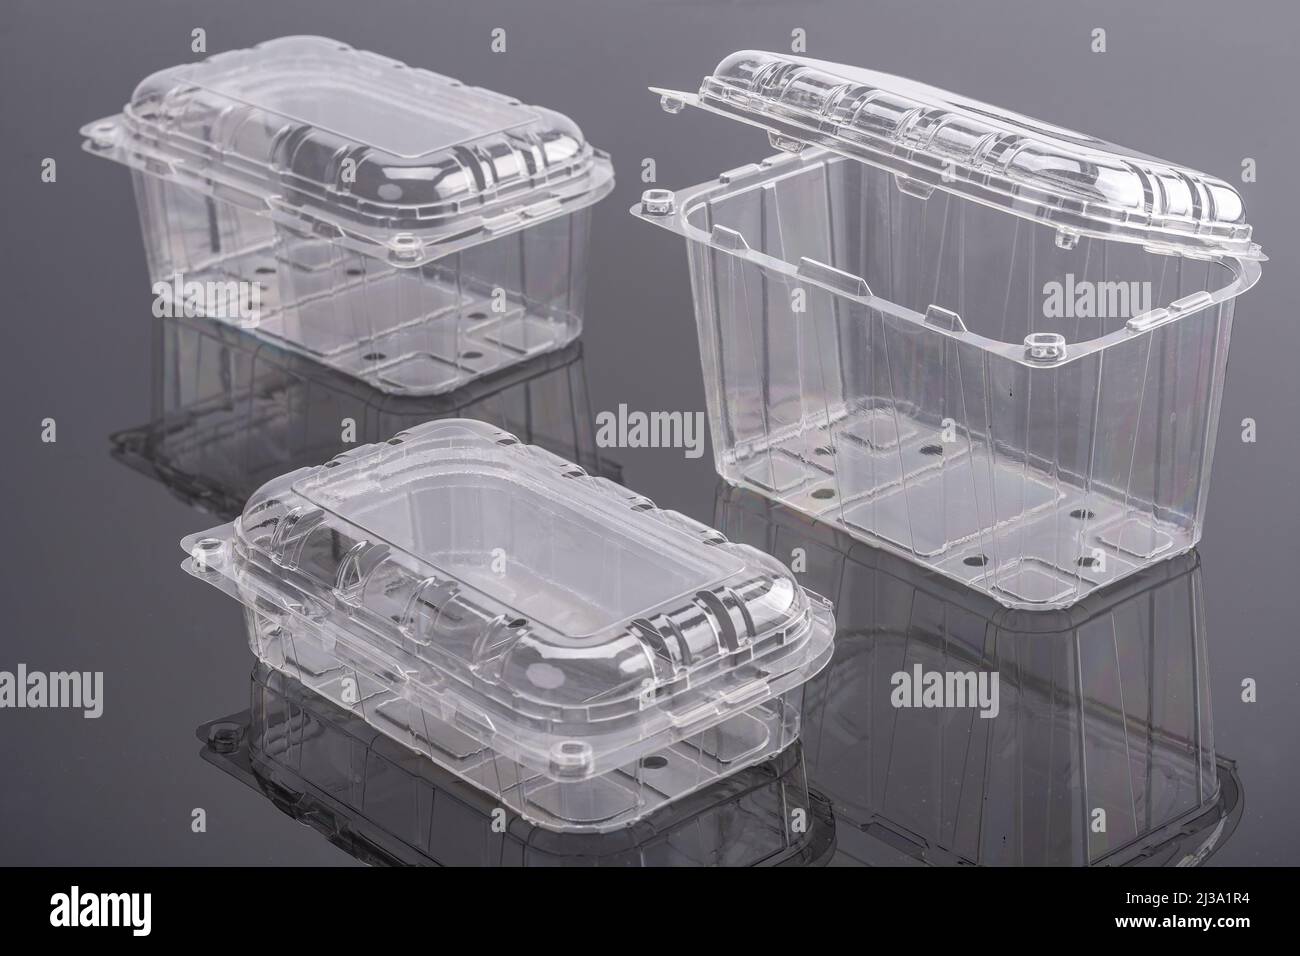 Cajas de Cartoon & Plástico y Platos Transperant para comida y ensalada de diferentes tamaños de stock - Alamy